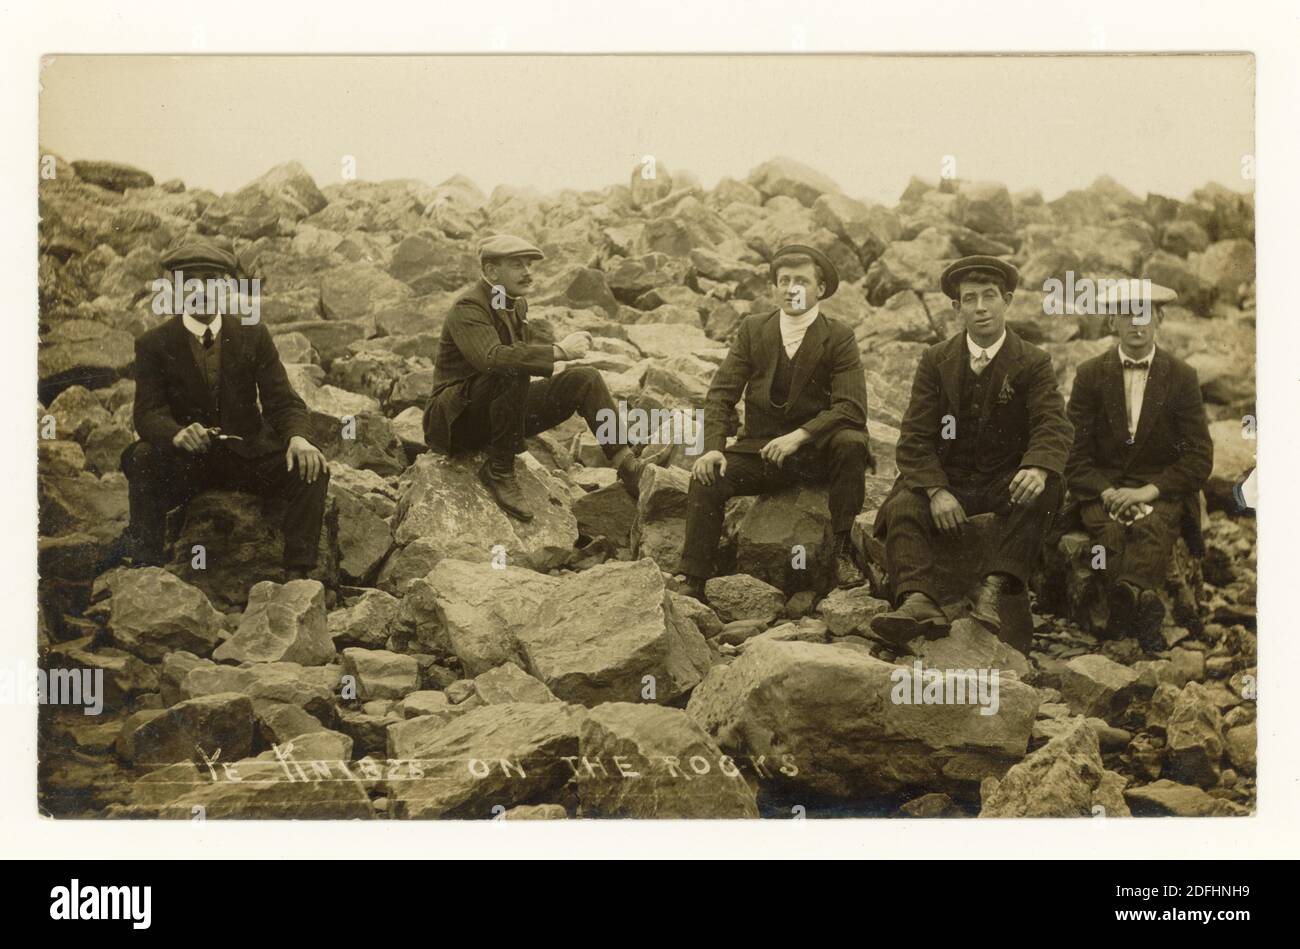 Postkarte der frühen 1900er Jahre von jungen Männern in flachen Kappen und tragen ihre 'Sunday Best' Kleidung, die auf Felsen sitzt - seine Knibs geschrieben auf der Vorderseite - circa Anfang der 1920er Jahre, Großbritannien Stockfoto